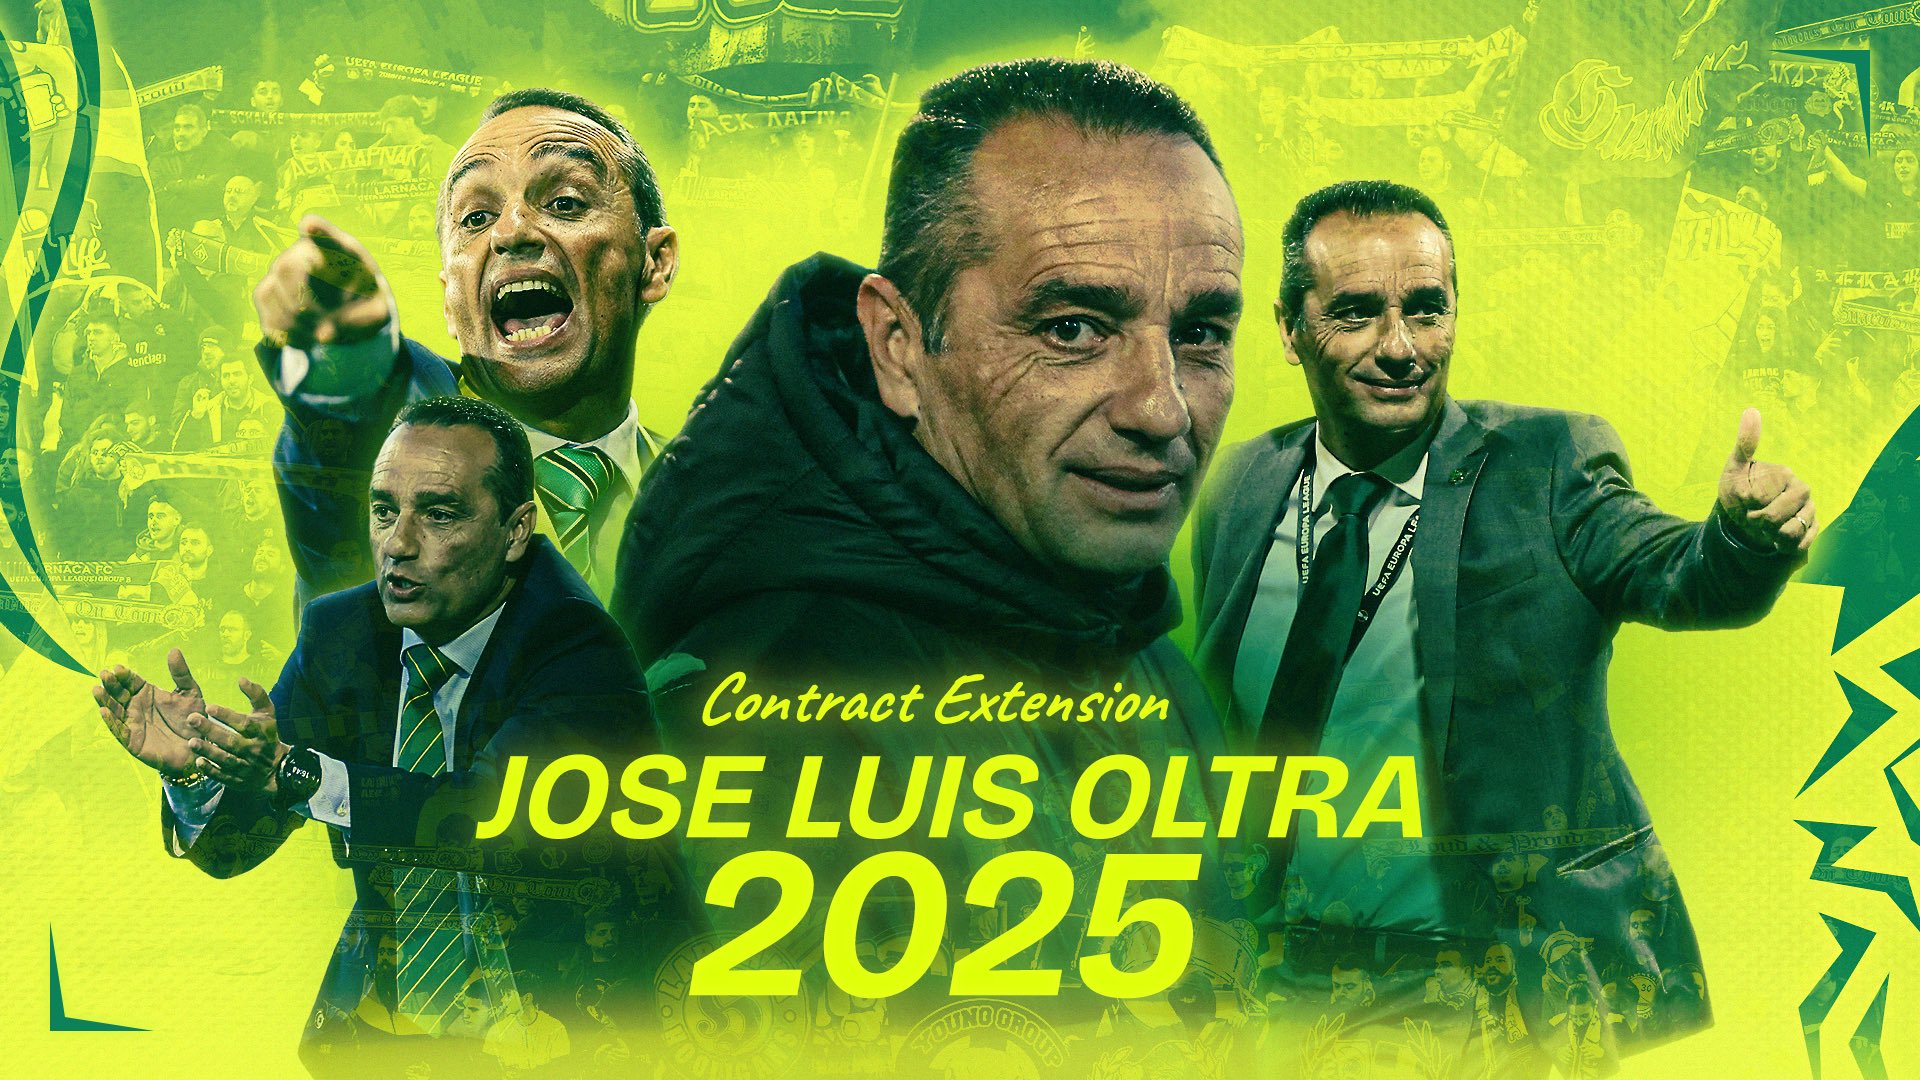 El ex blanquiazul José Luis Oltra renueva como técnico del AEK Larnaca hasta 2025